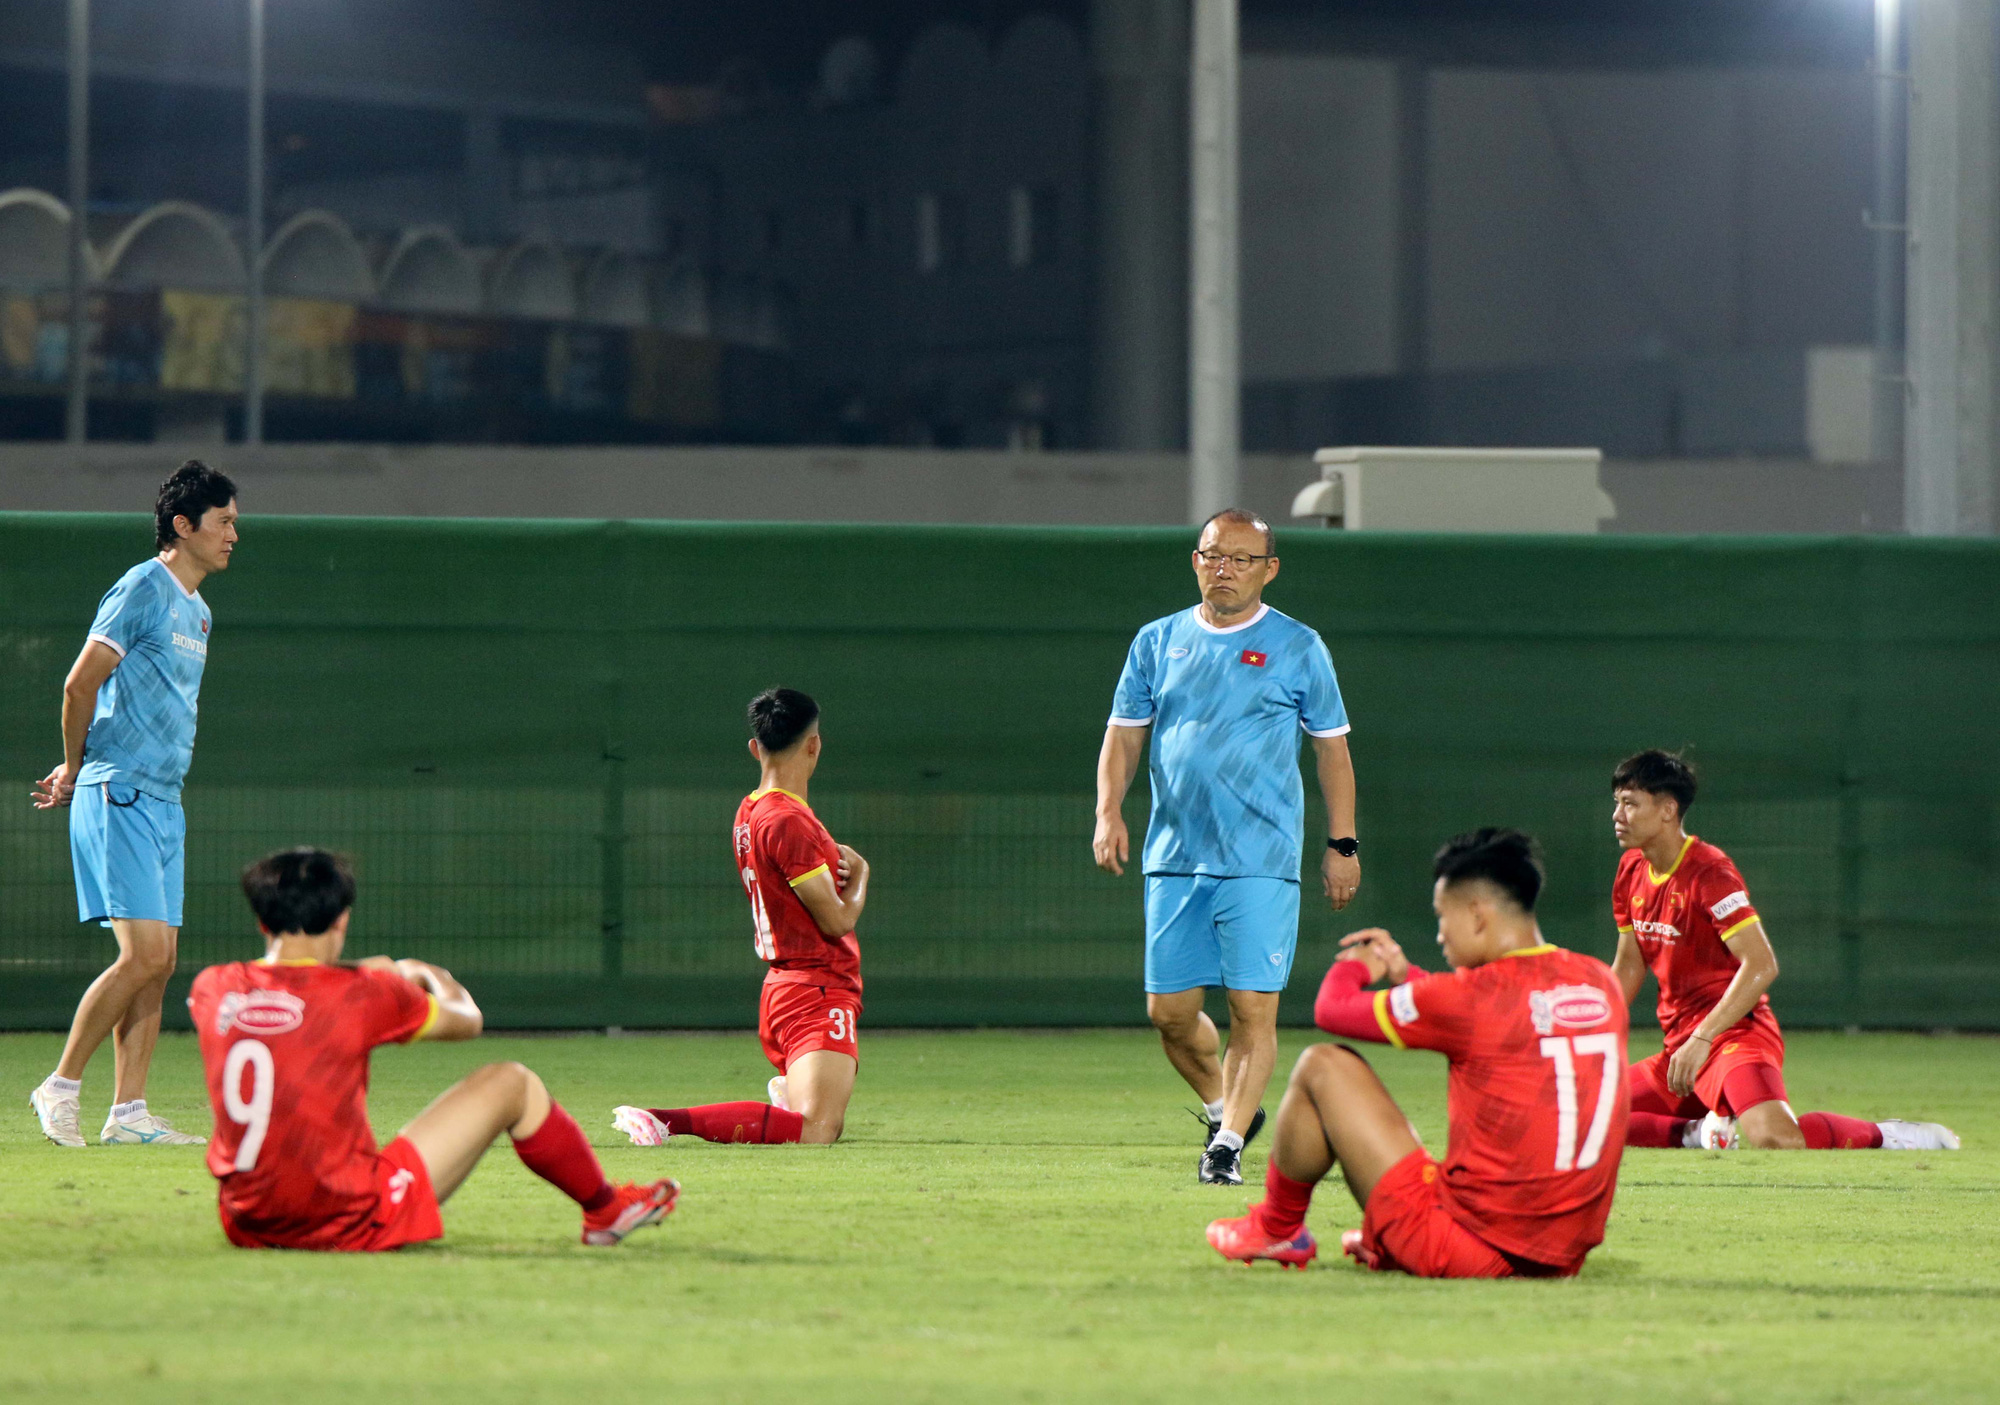 Cầu thủ Việt Nam hứng khởi với các bài tập dưới thời tiết khắc nghiệt ở UAE - Ảnh 4.